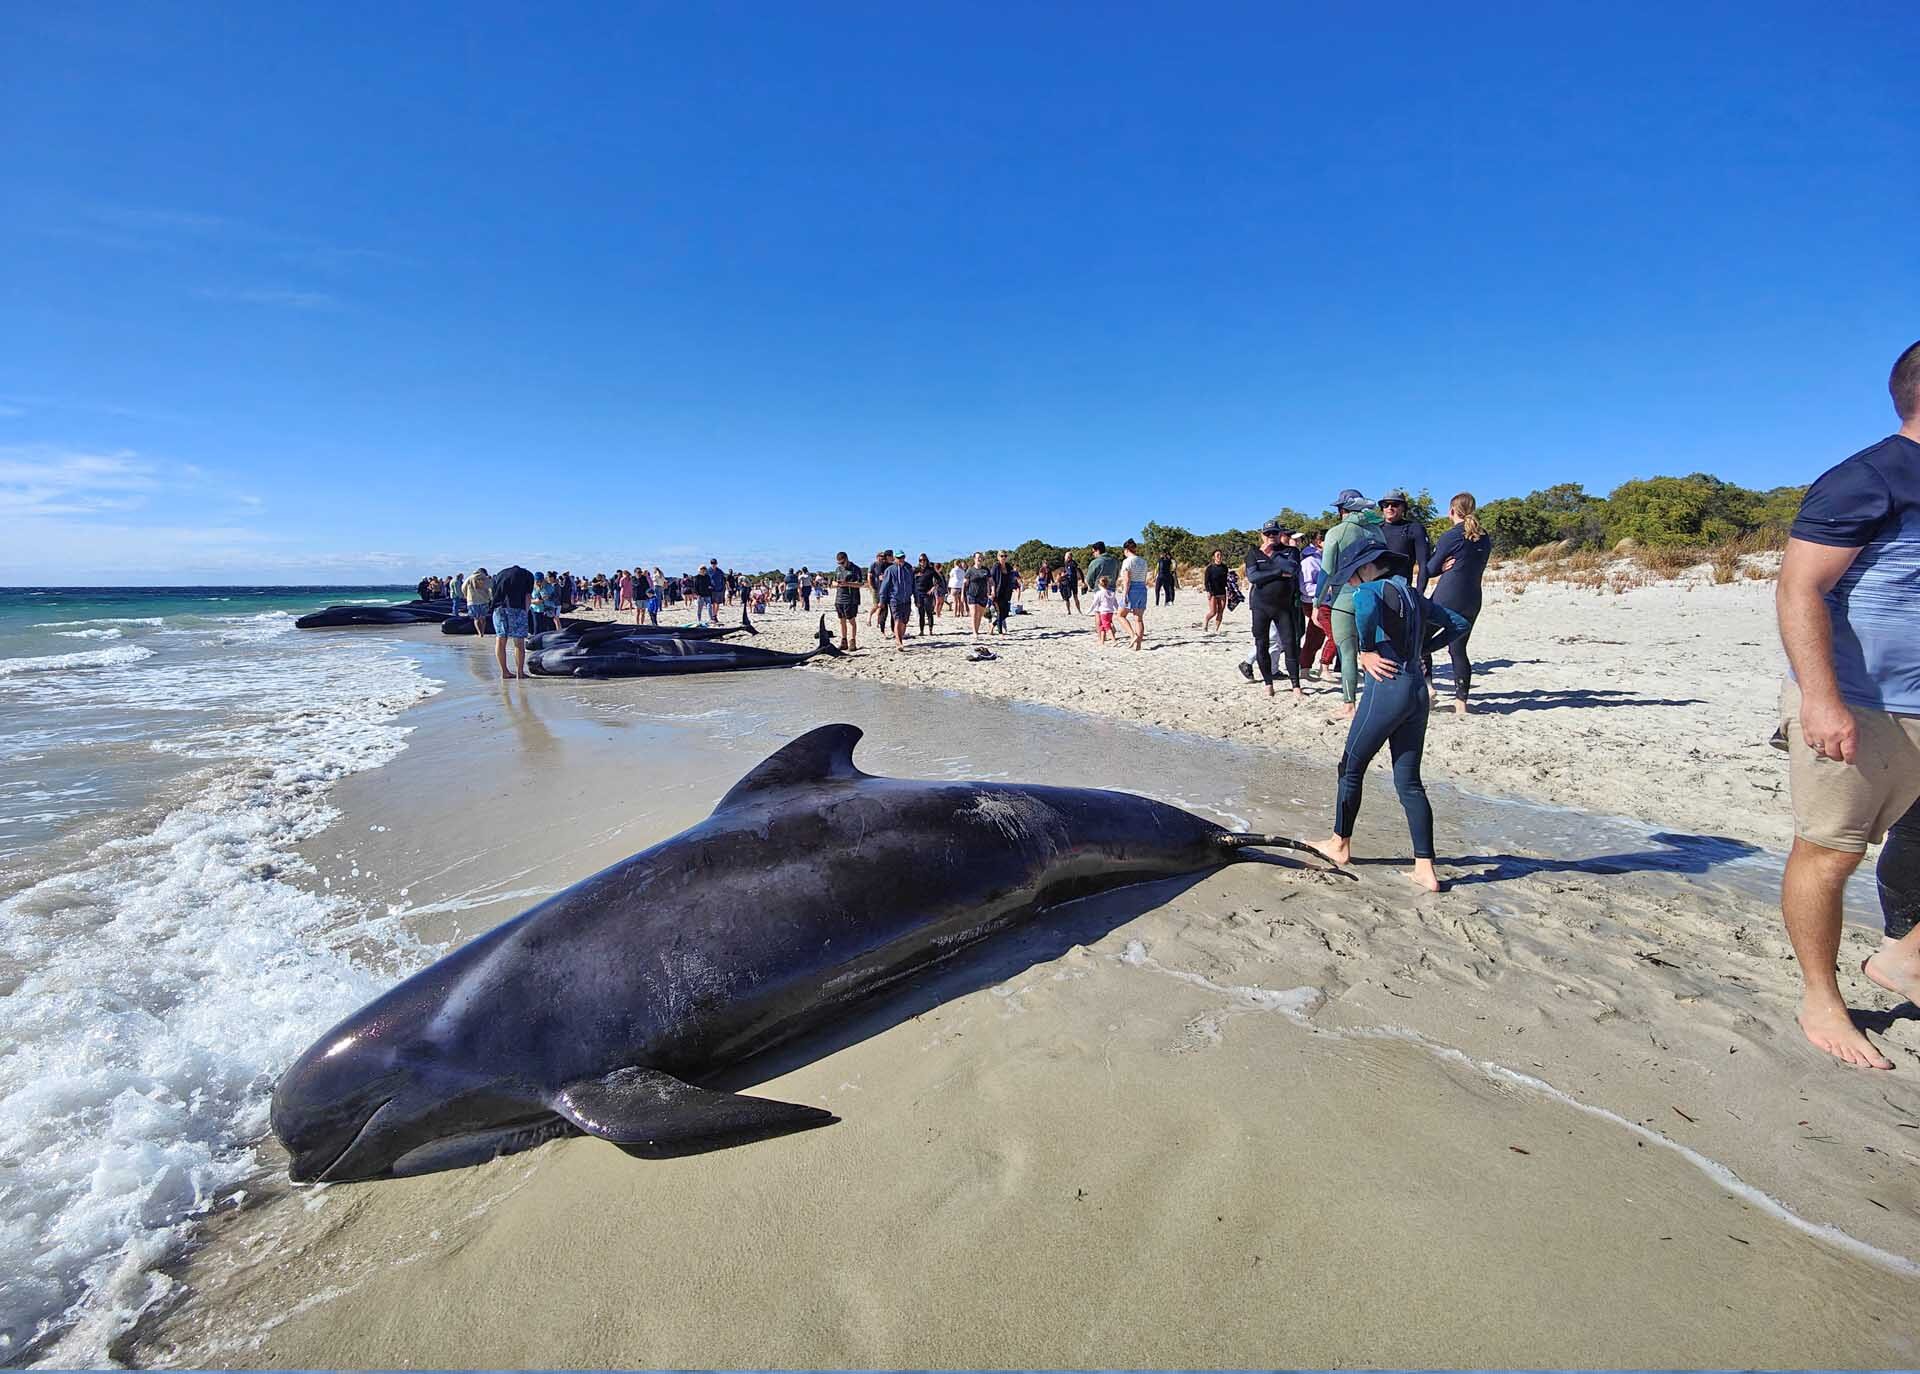 เร่งช่วยเหลือ “วาฬนำร่อง” 160 ตัวเกยหาดออสเตรเลีย-หวั่นต้องการุณยฆาตหมู่